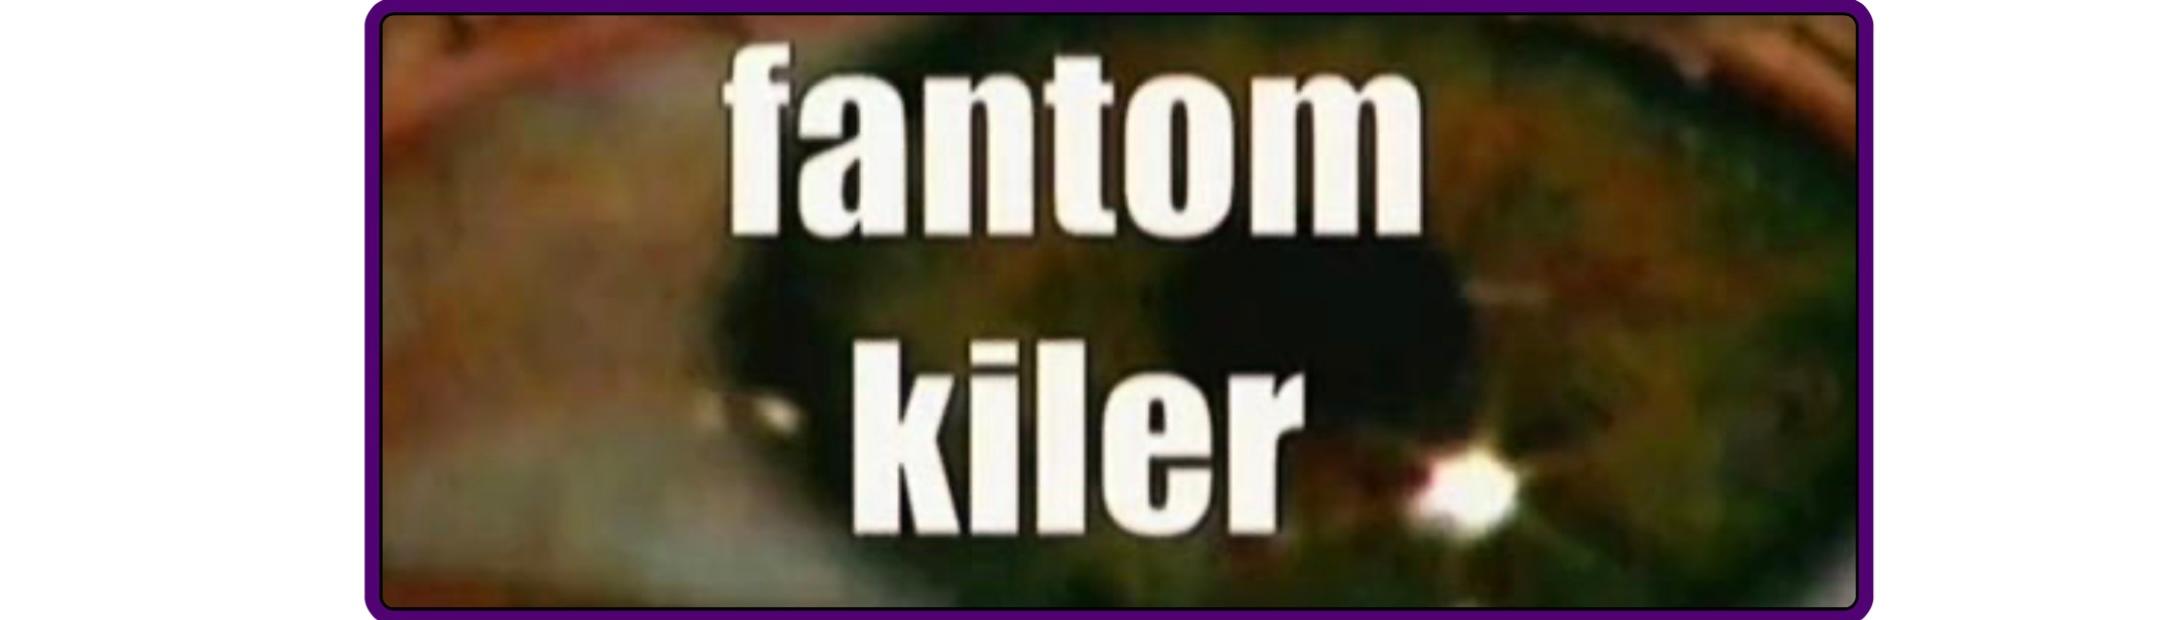 Fantom kiler (1998) Screenshot 5